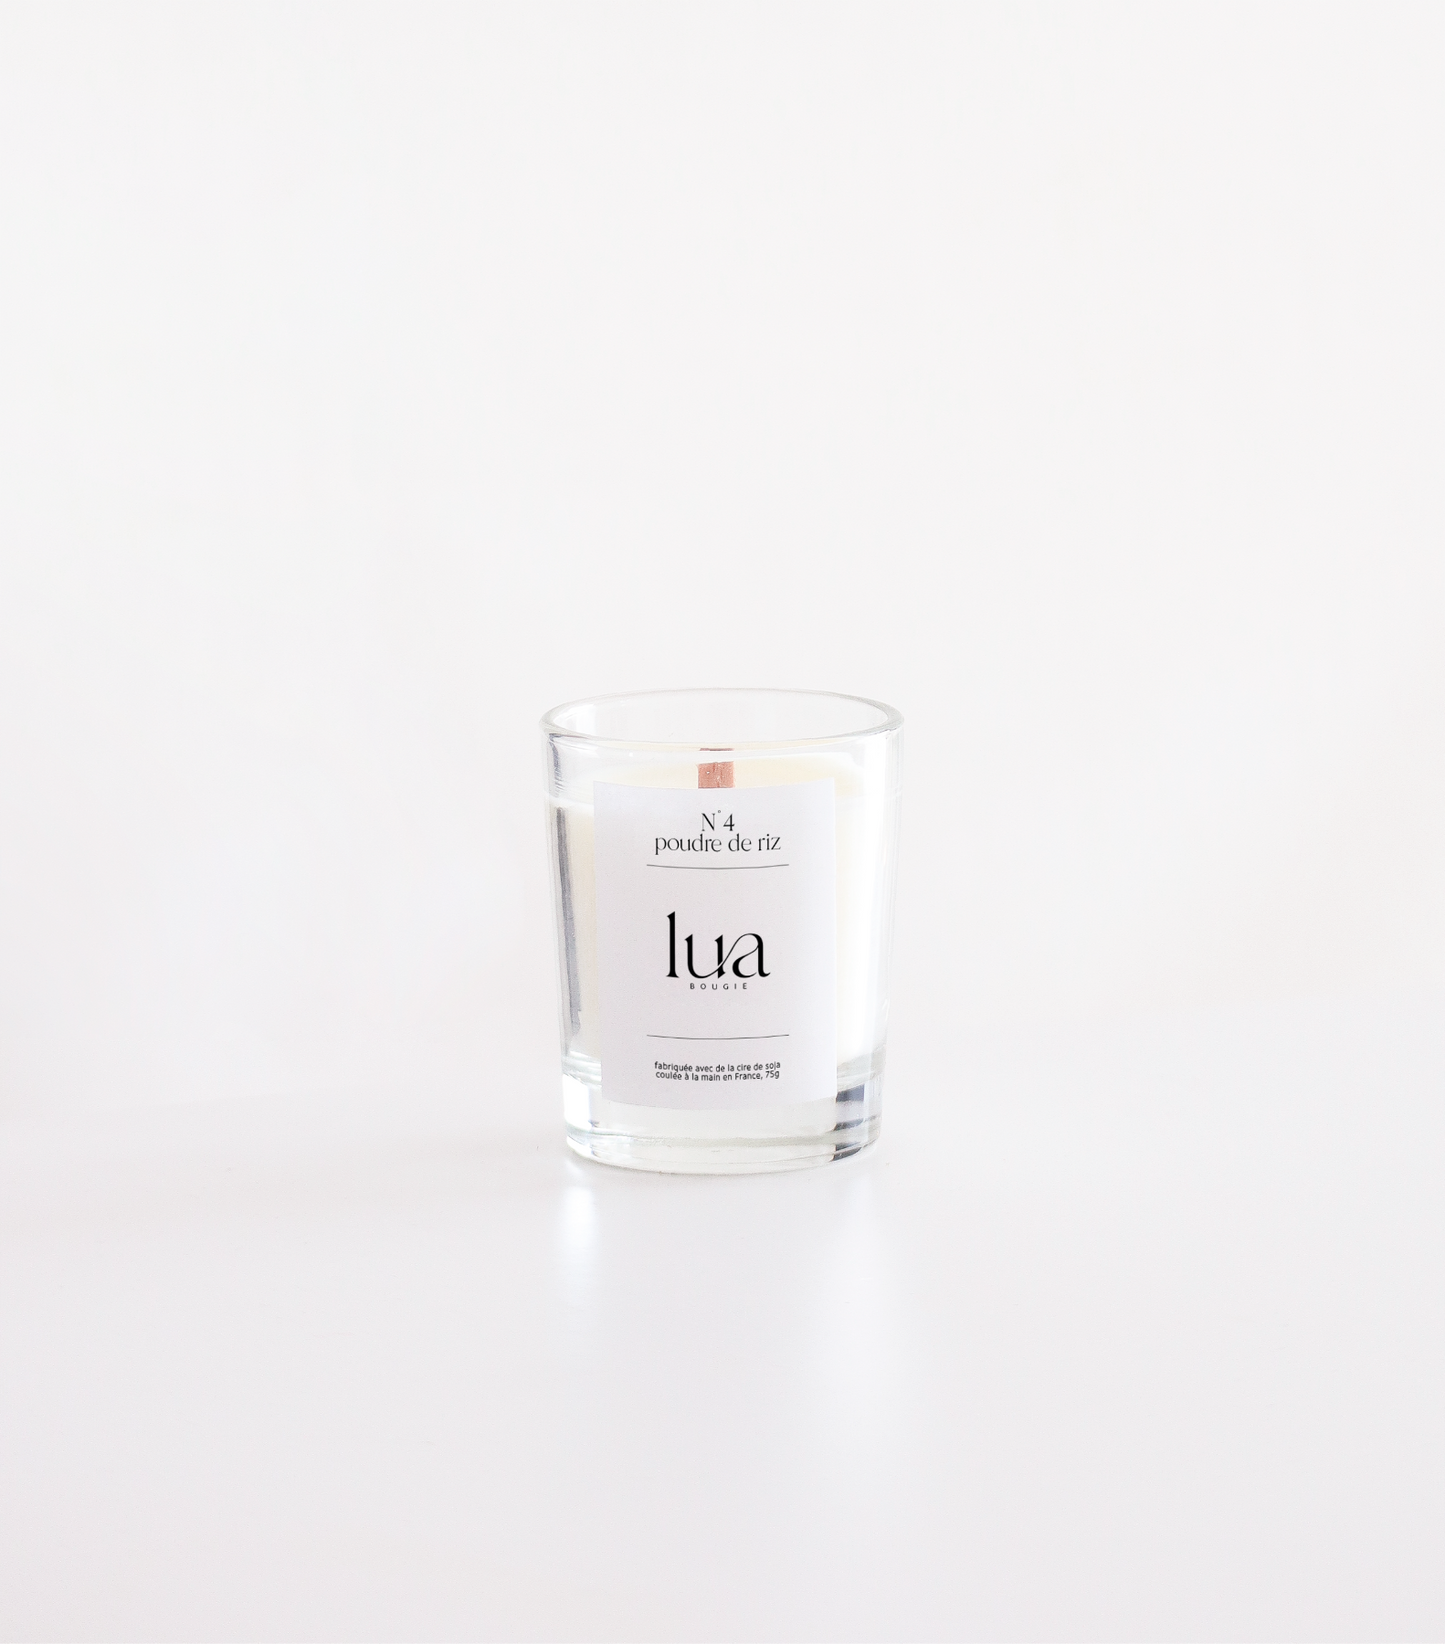 Bougie Lua parfumée et rechargeables, parfum poudre de riz, contenant transparent 75g. 